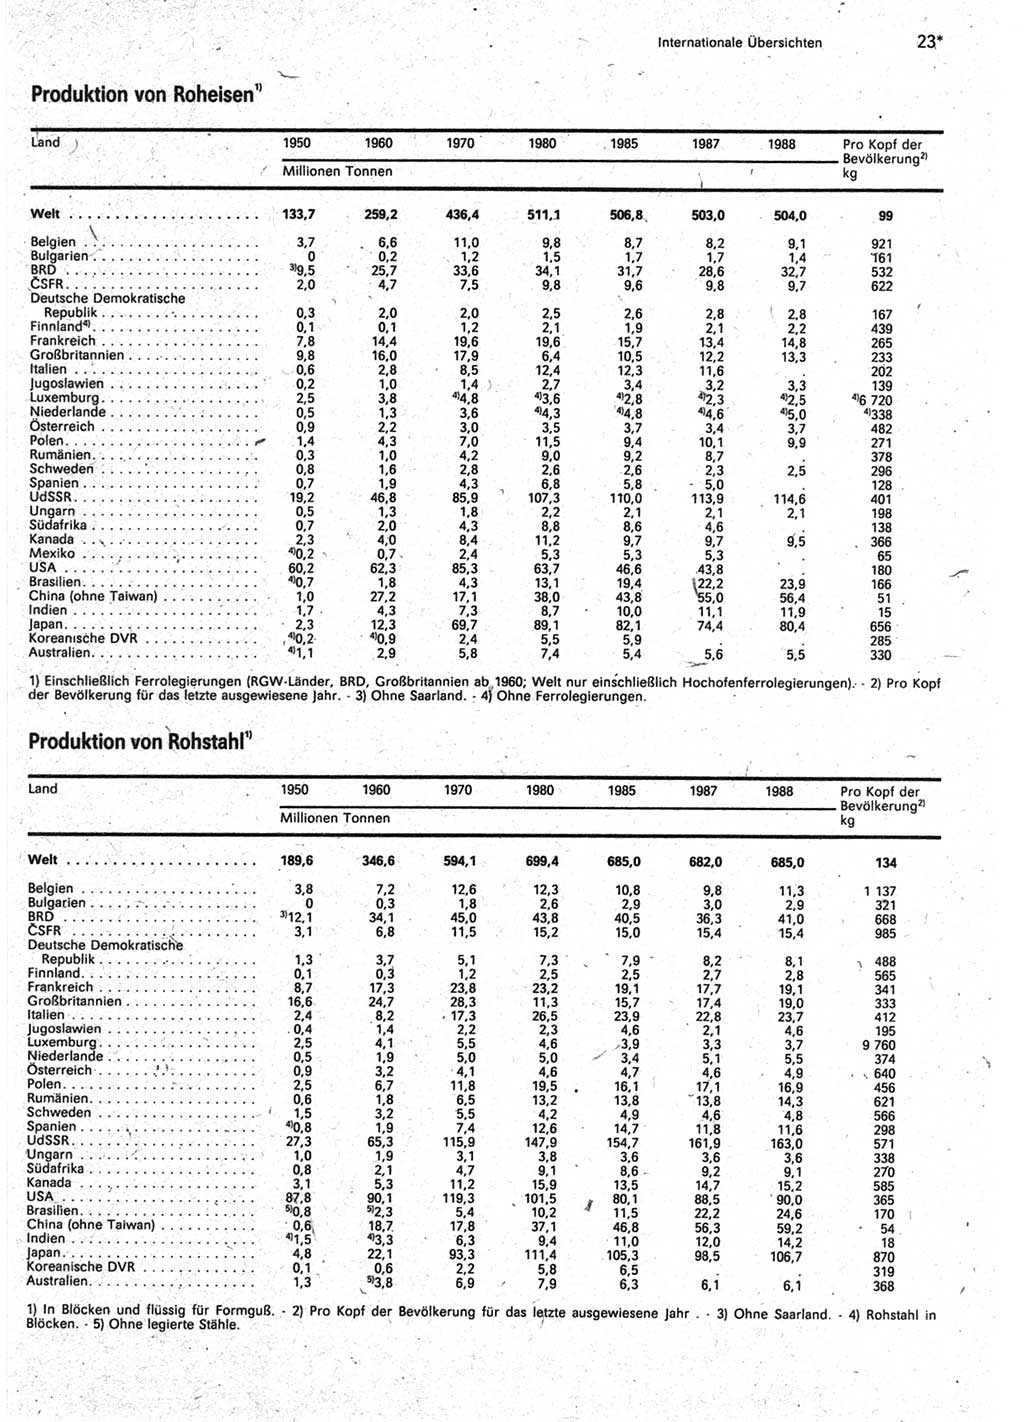 Statistisches Jahrbuch der Deutschen Demokratischen Republik (DDR) 1990, Seite 23 (Stat. Jb. DDR 1990, S. 23)